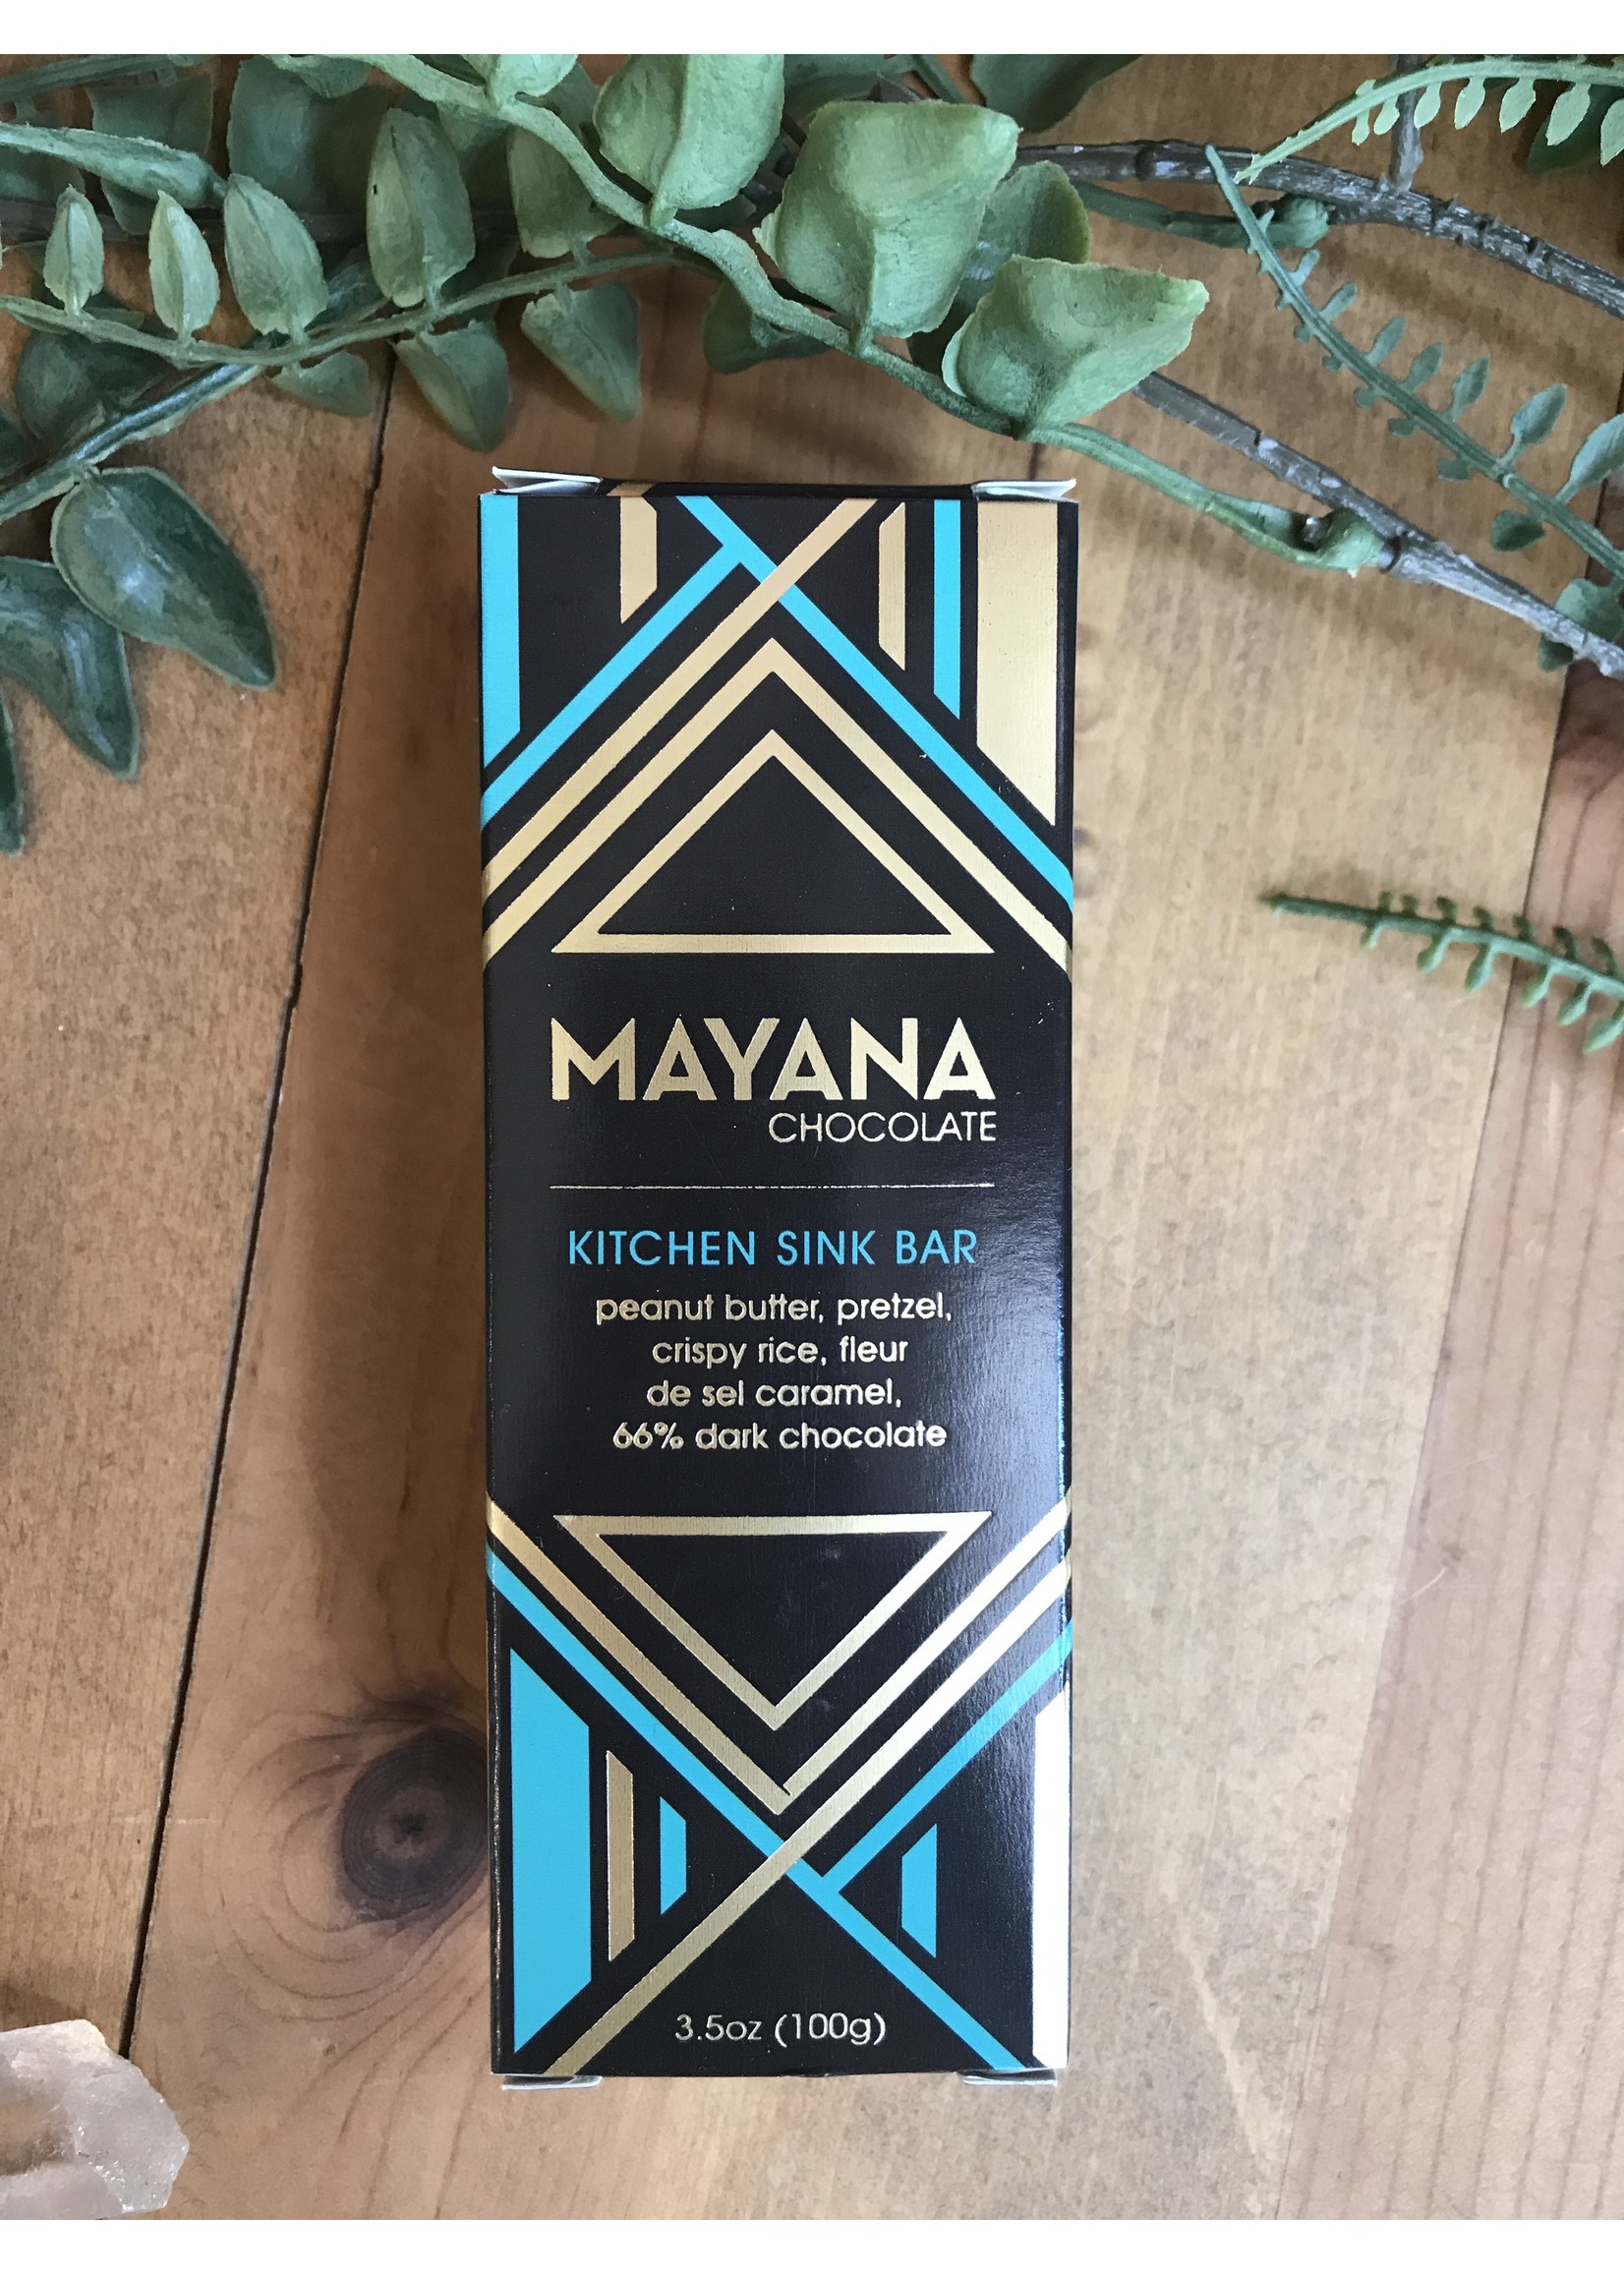 Mayana Chocolate Bar